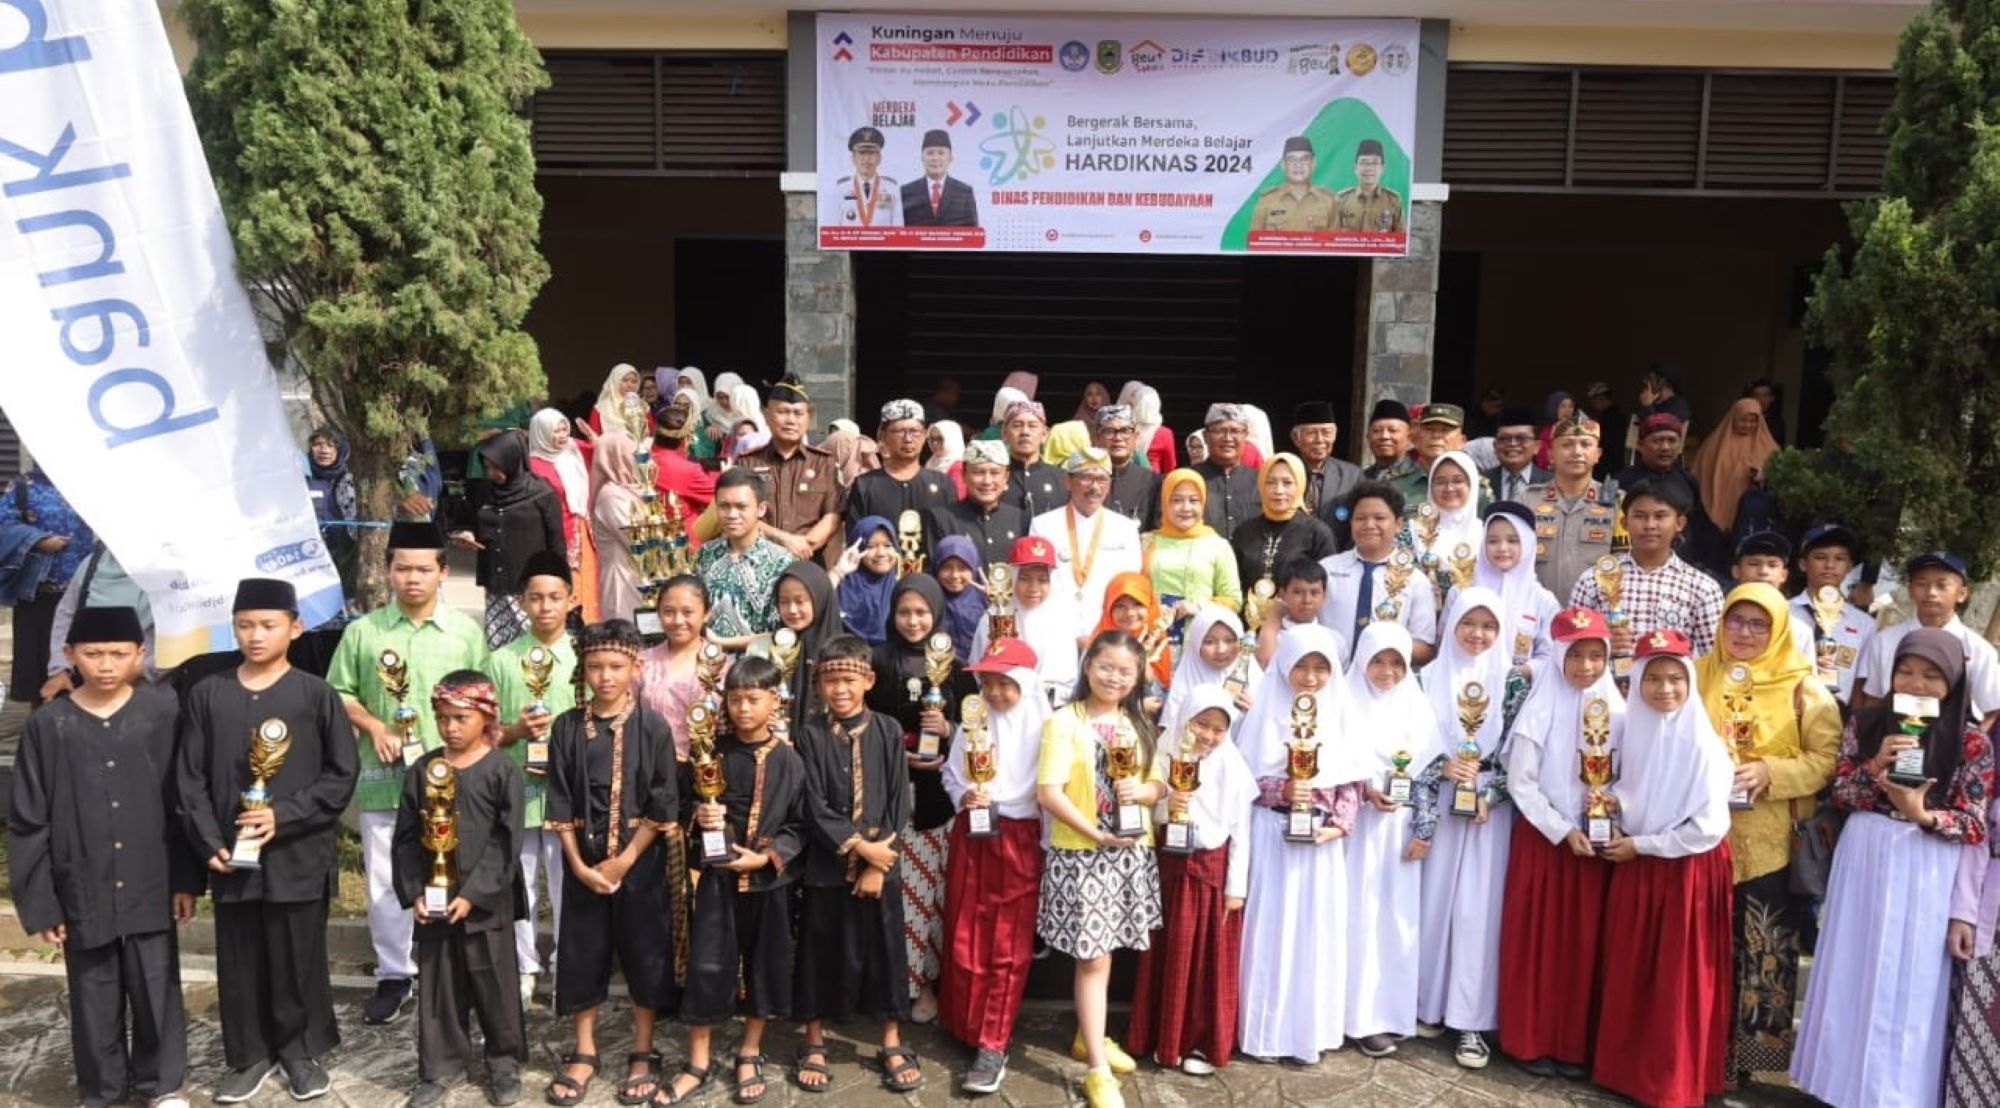 Pj Bupati Kuningan, H. Raden Iip Hidajat foto bersama dengan keluarga besar Disdikbud serta para siswa dan sekolah berprestasi  seusai peringatan Hardiknas.